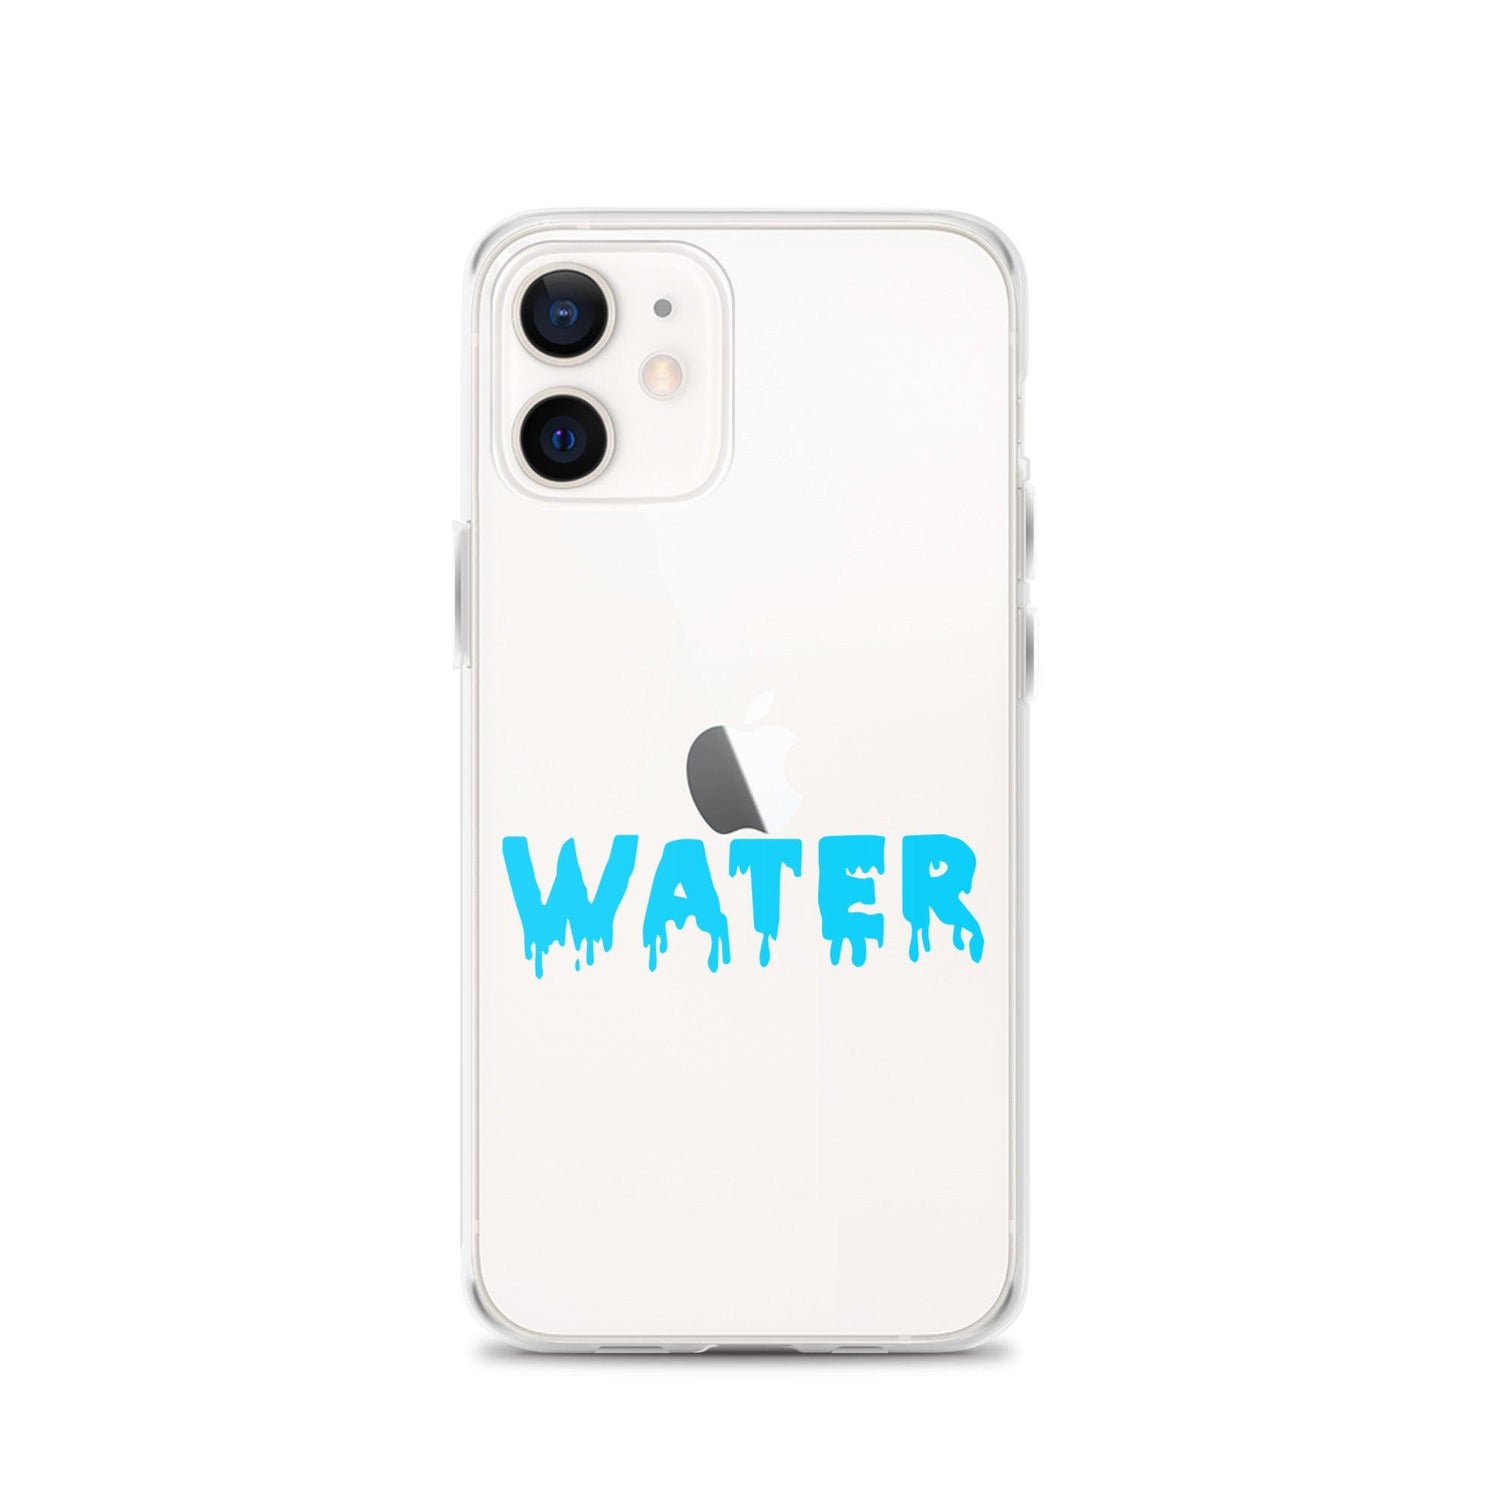 Dracovii "Water" iPhone Case - Fan Arch